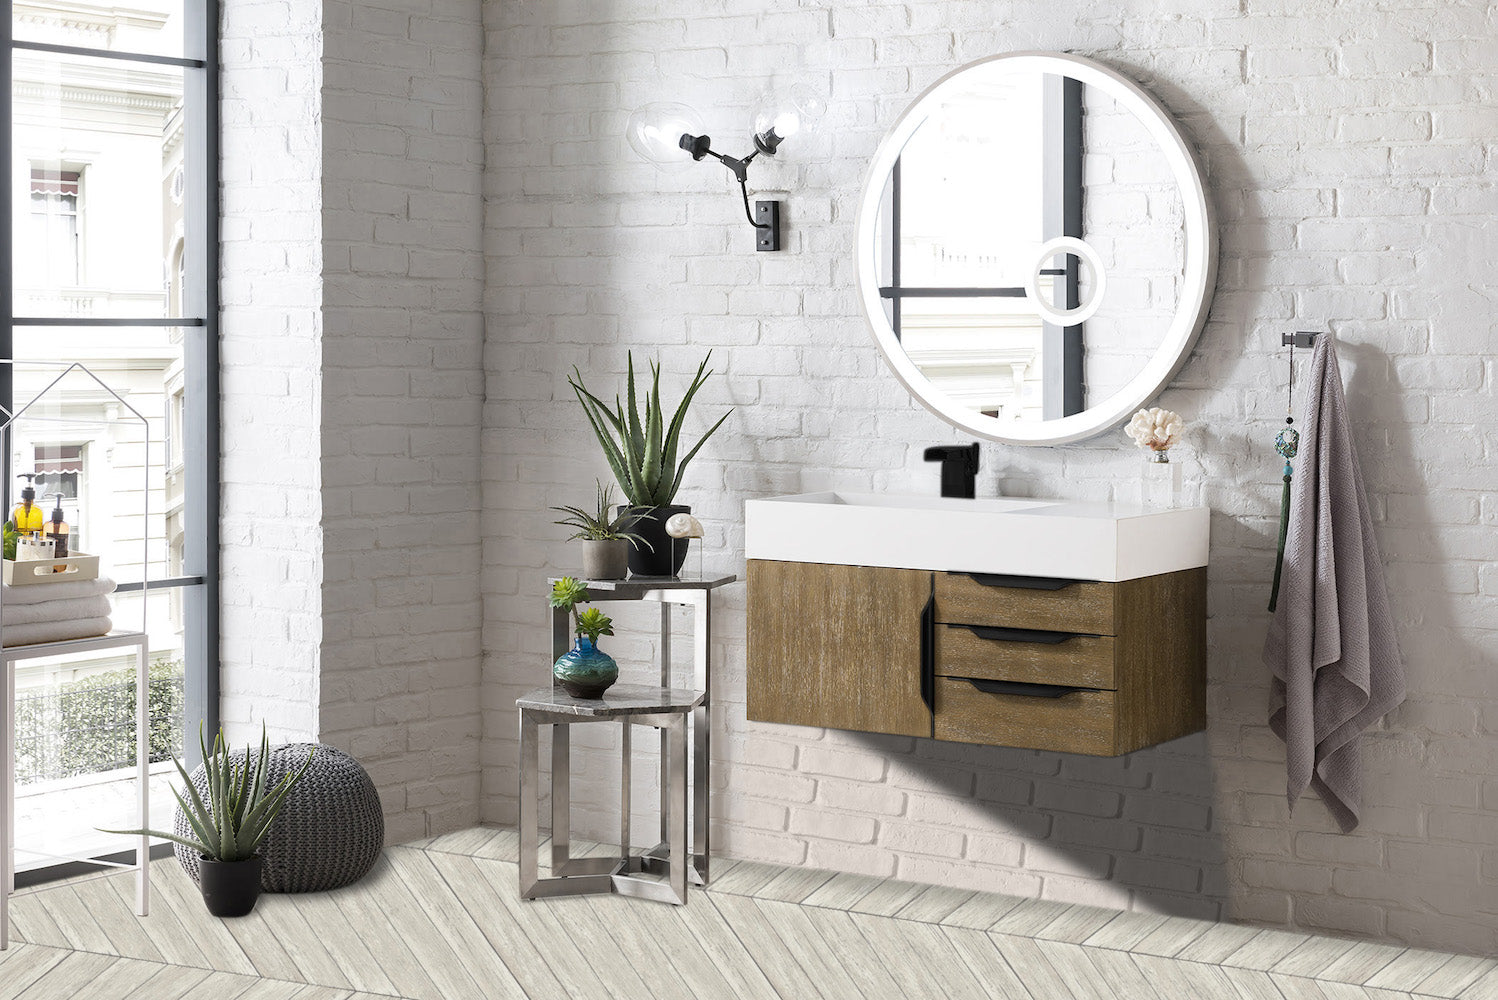 36" Mercer Island Single Sink Bathroom Vanity, Latte Oak w/ Matte Black